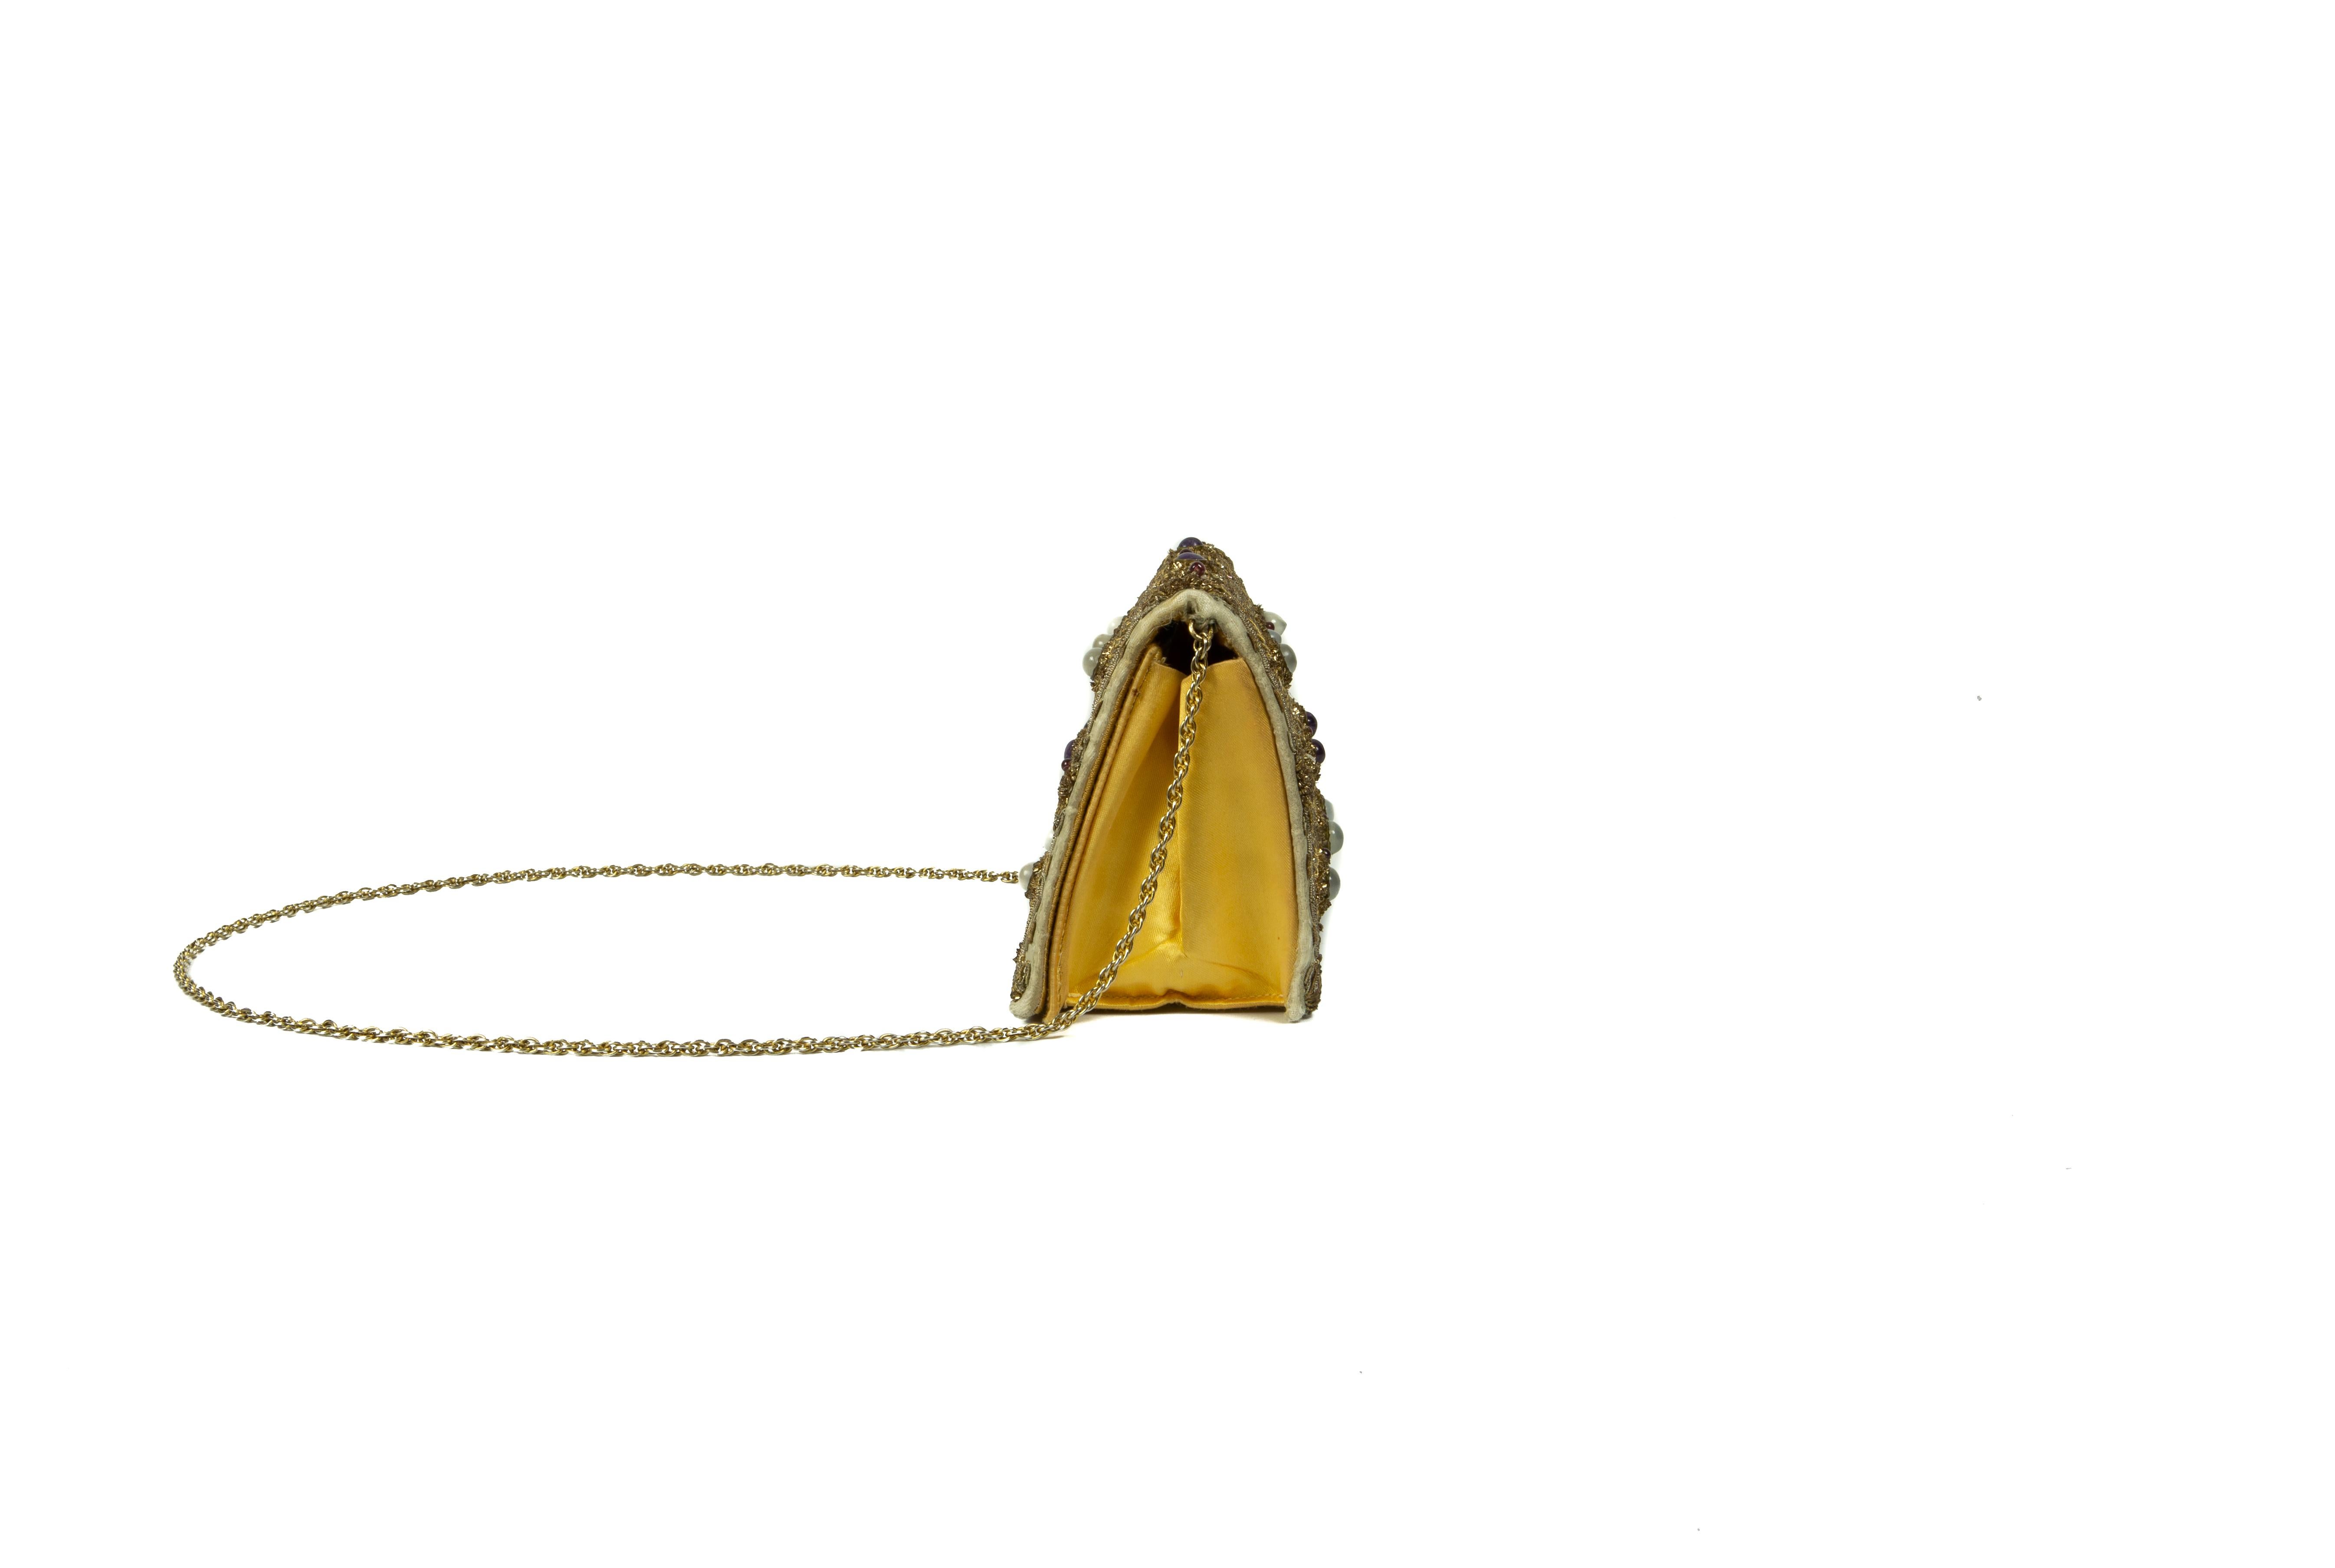 Eine seltene Goldlamé-Abendtasche aus den späten 1940er Jahren mit Gold- und Silberbarren-Applikationen in einem stilisierten Gänseblümchen-, Blütenblatt-, Knospen- und geometrischen Design, die Blütenstempel aus runden und ovalen